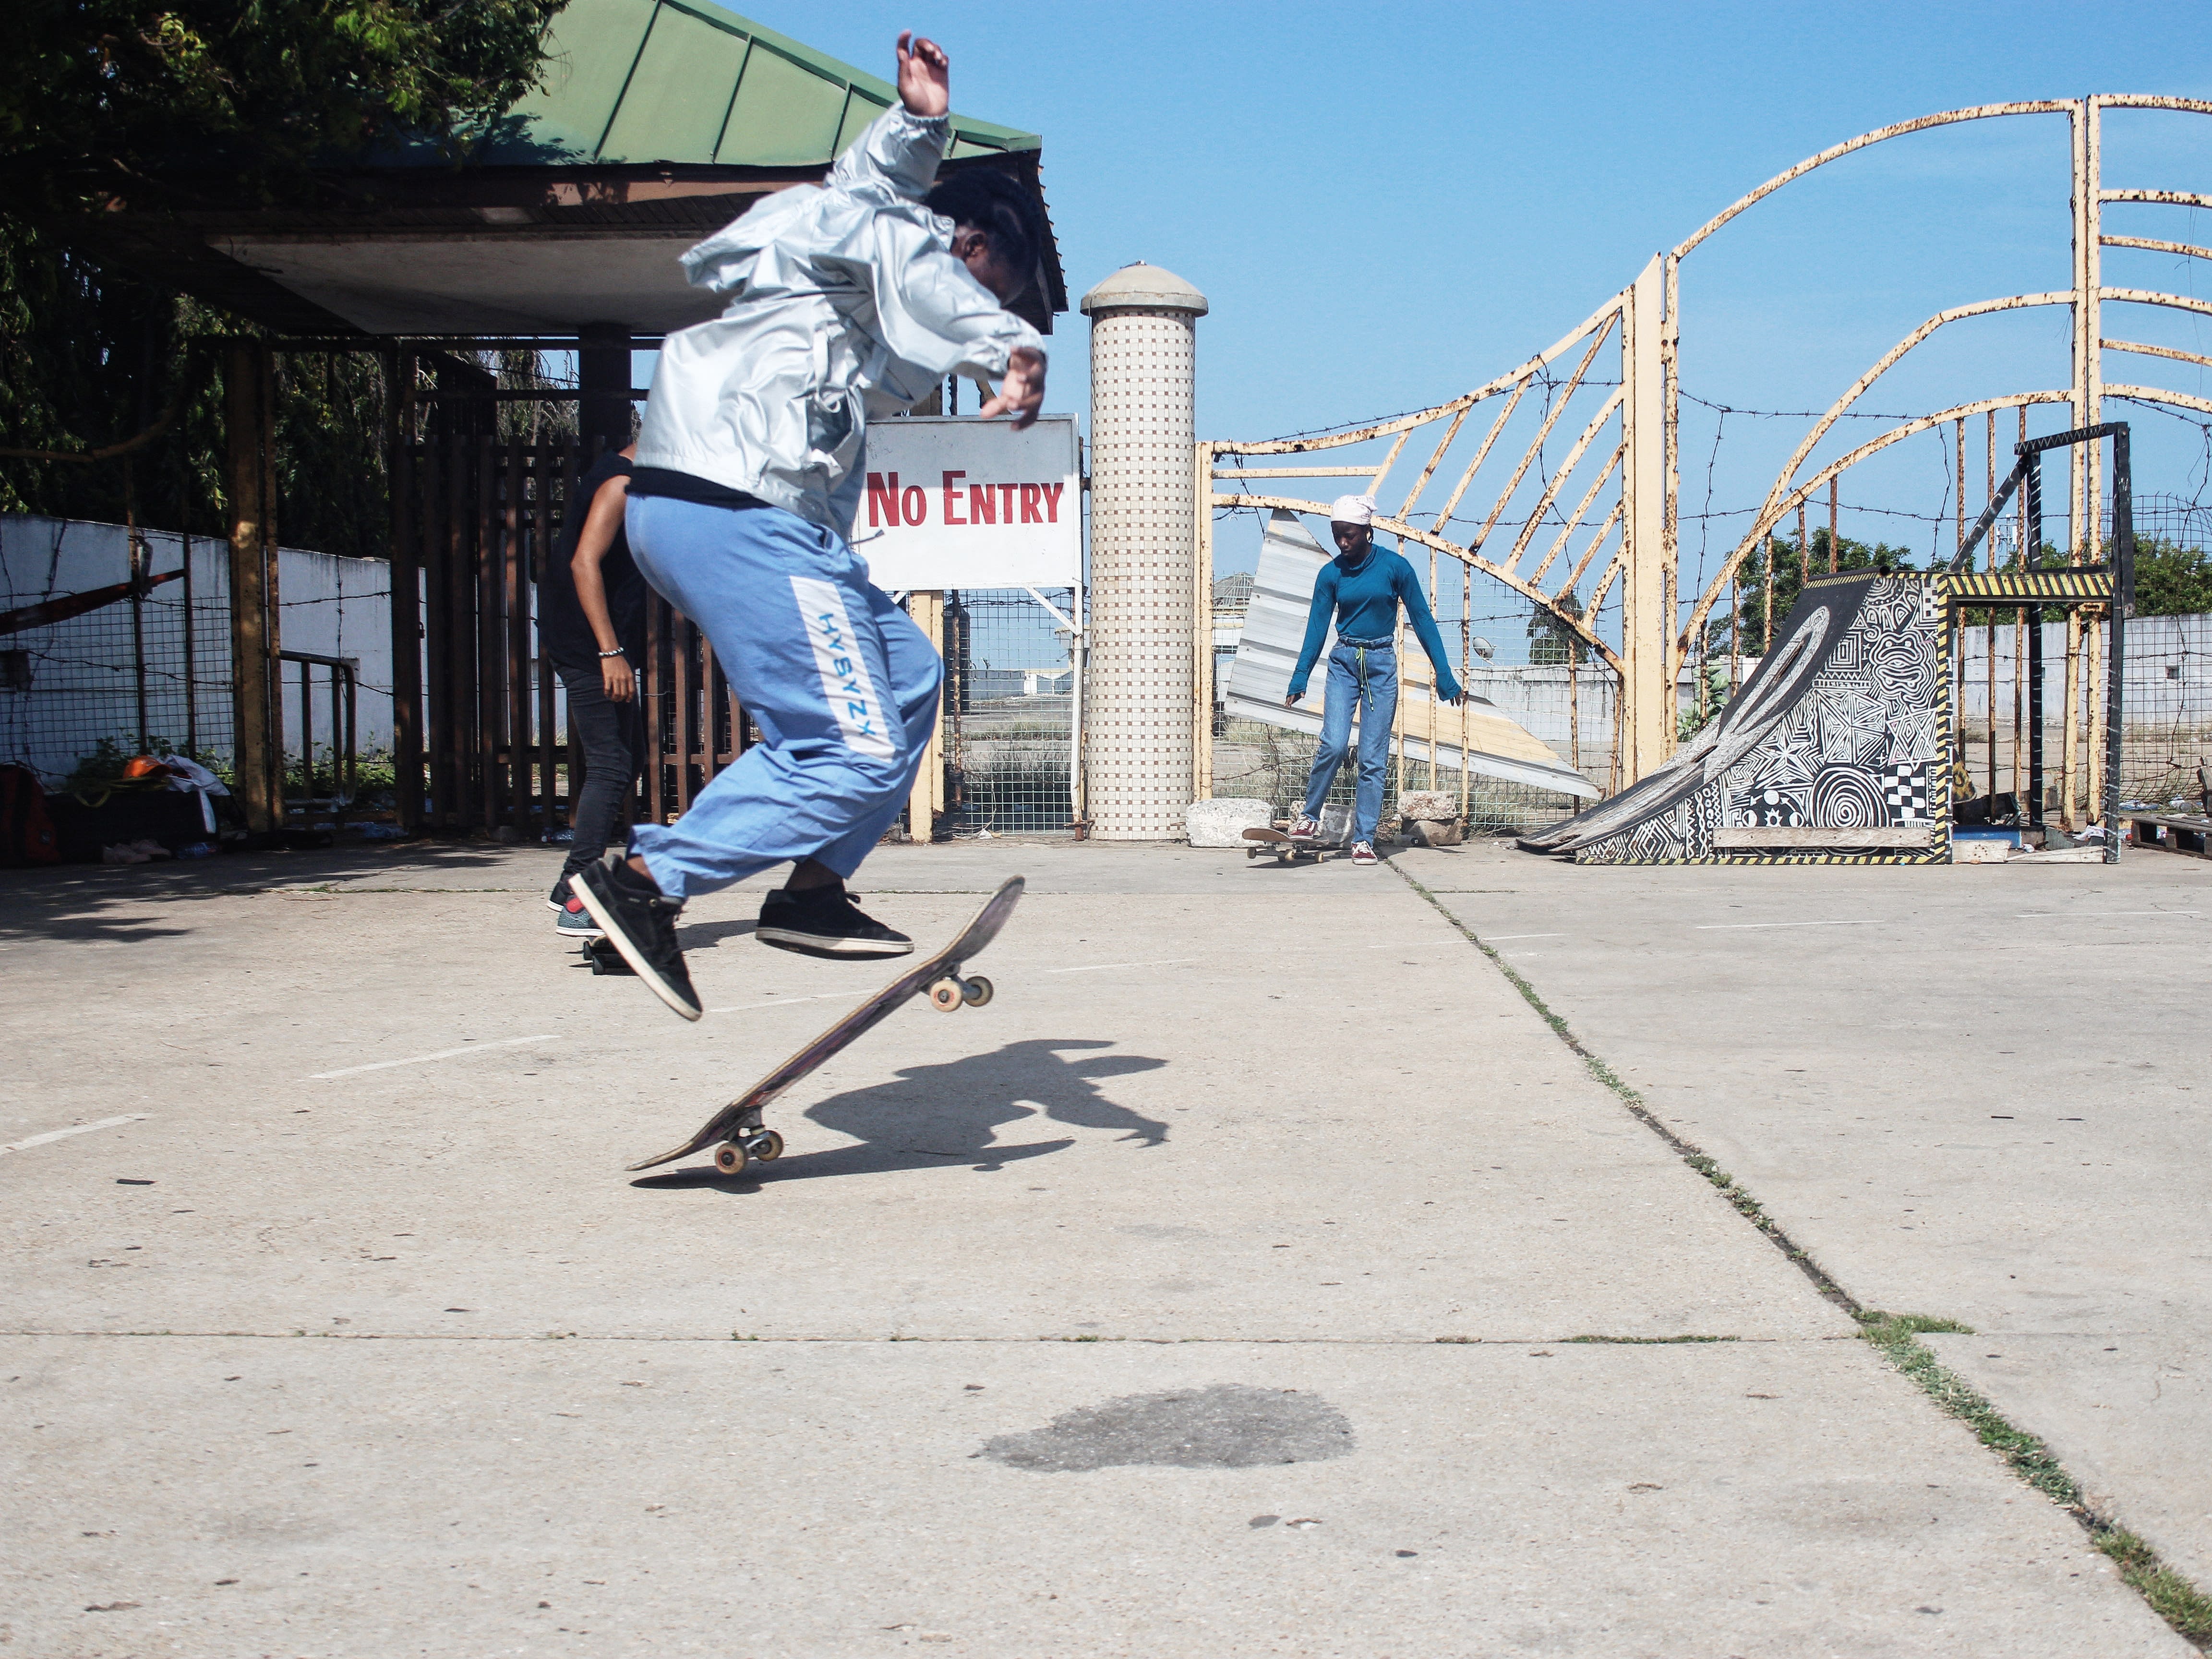 Virgil Abloh Helps Bring Skateboarding Program To West Side Kids